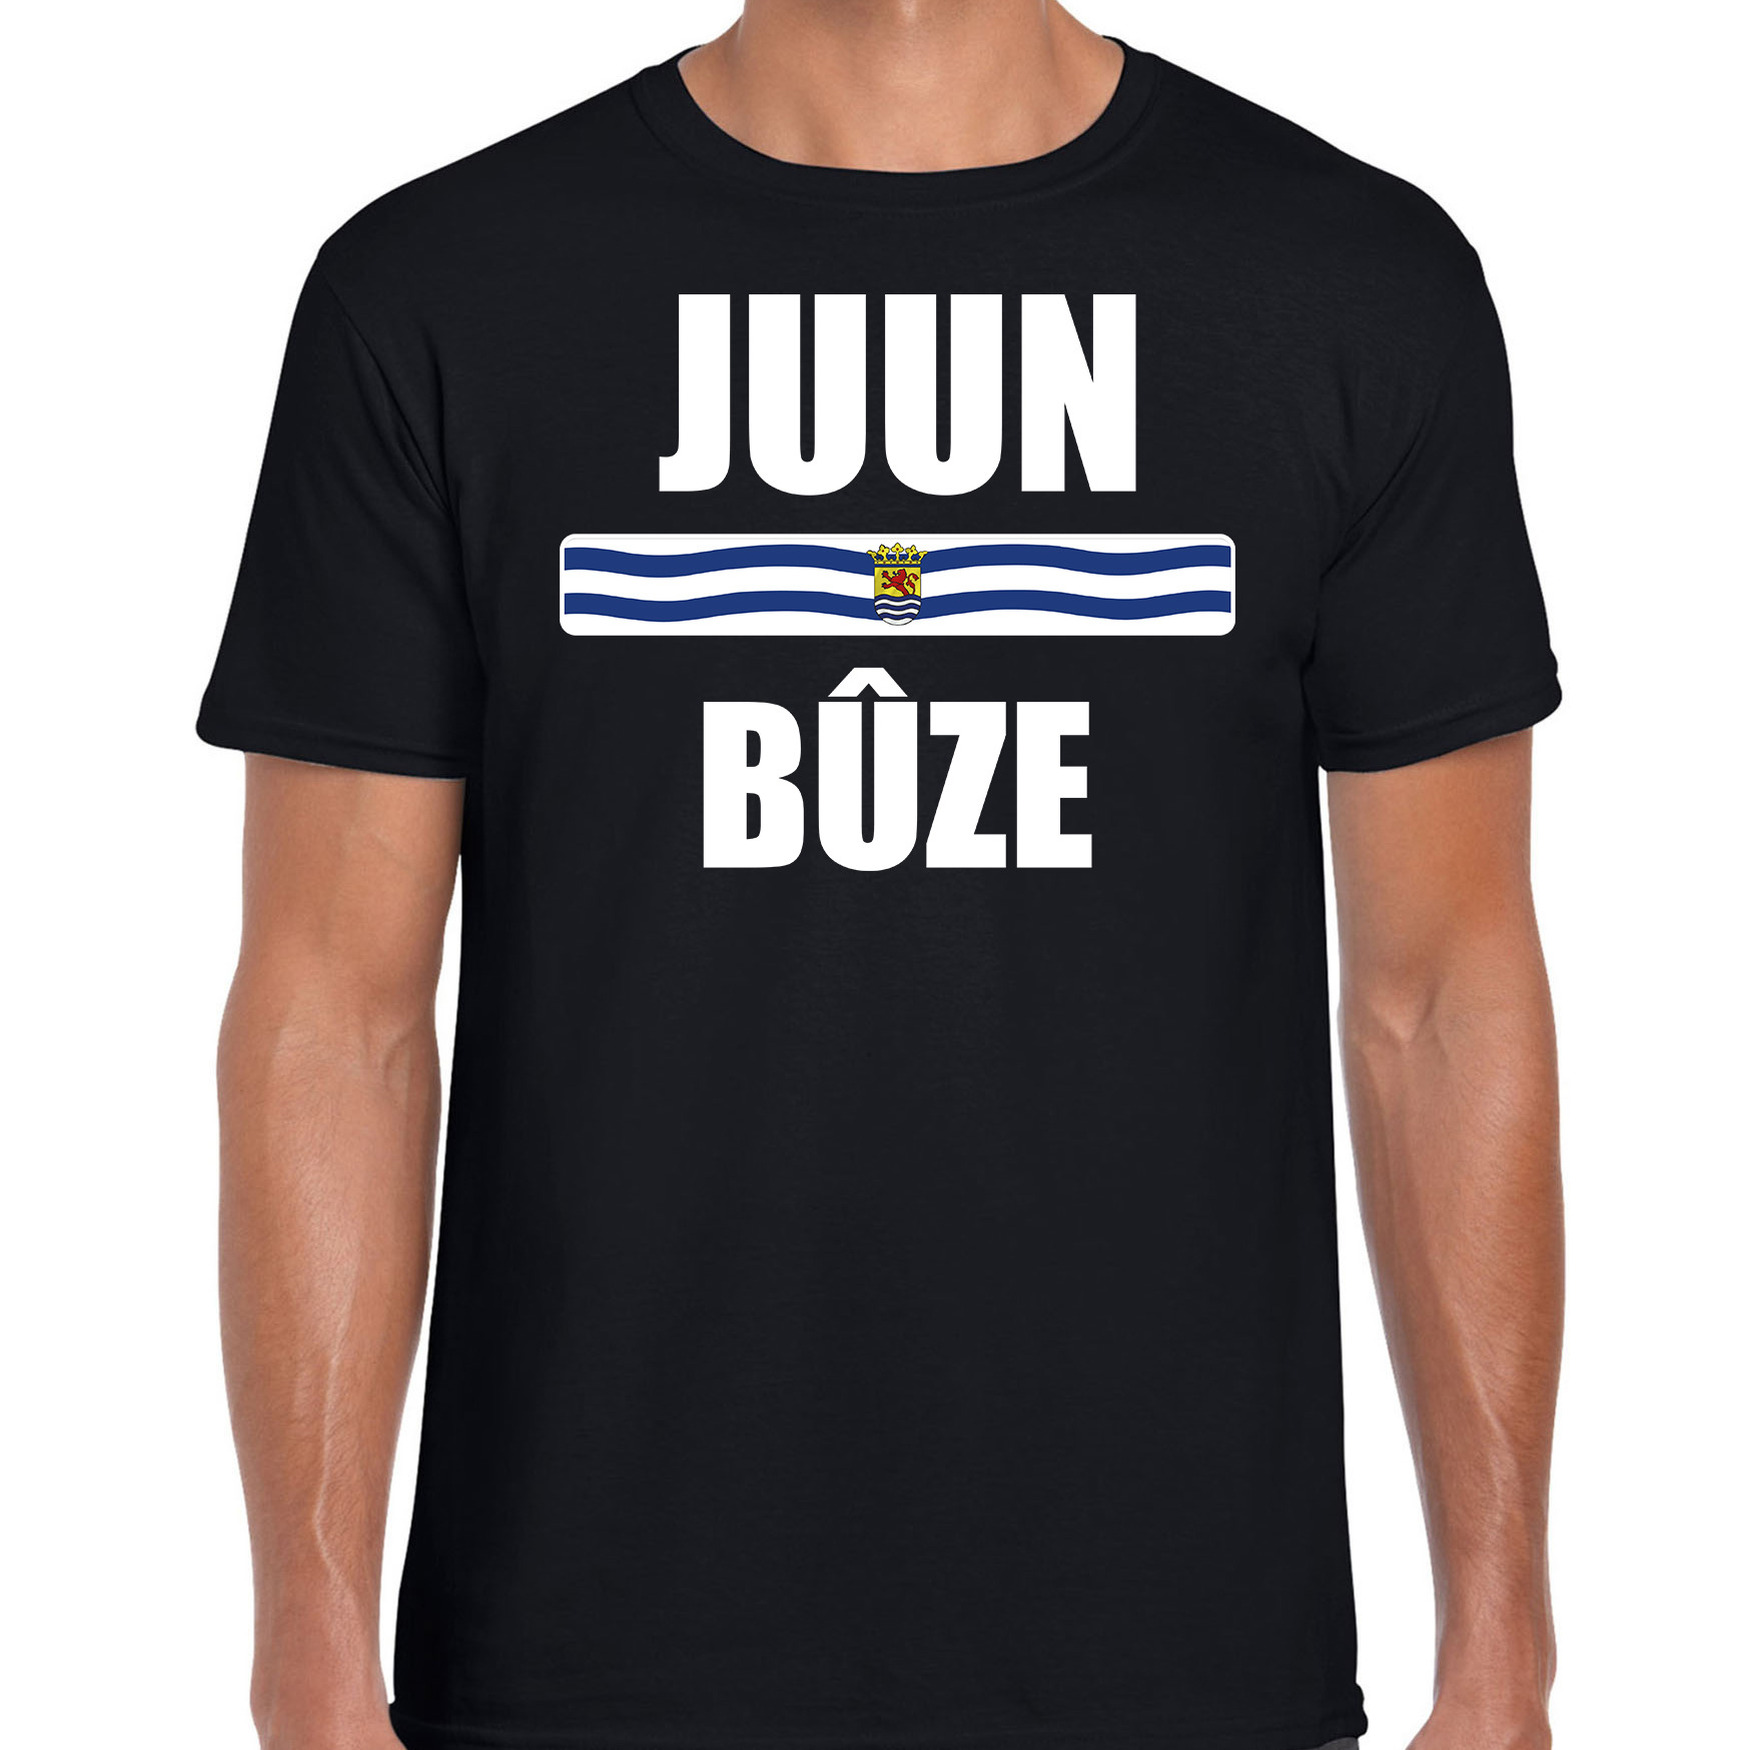 Juun buze met vlag Zeeland t-shirts Zeeuws dialect zwart voor heren